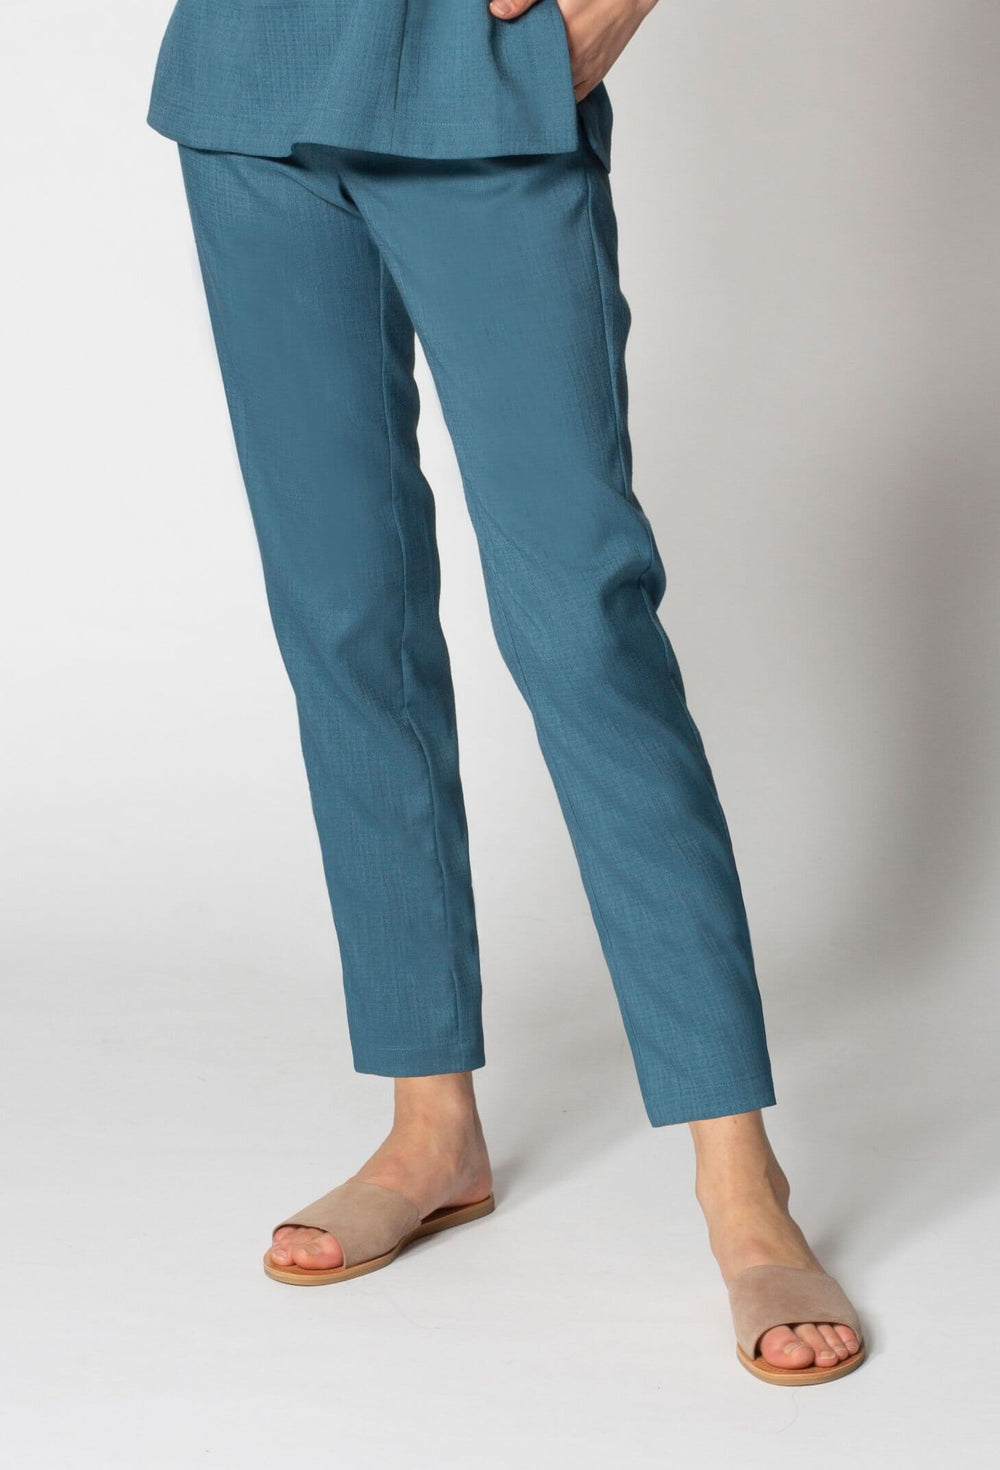 Noel Asmar Women's Faux Linen Long Pants